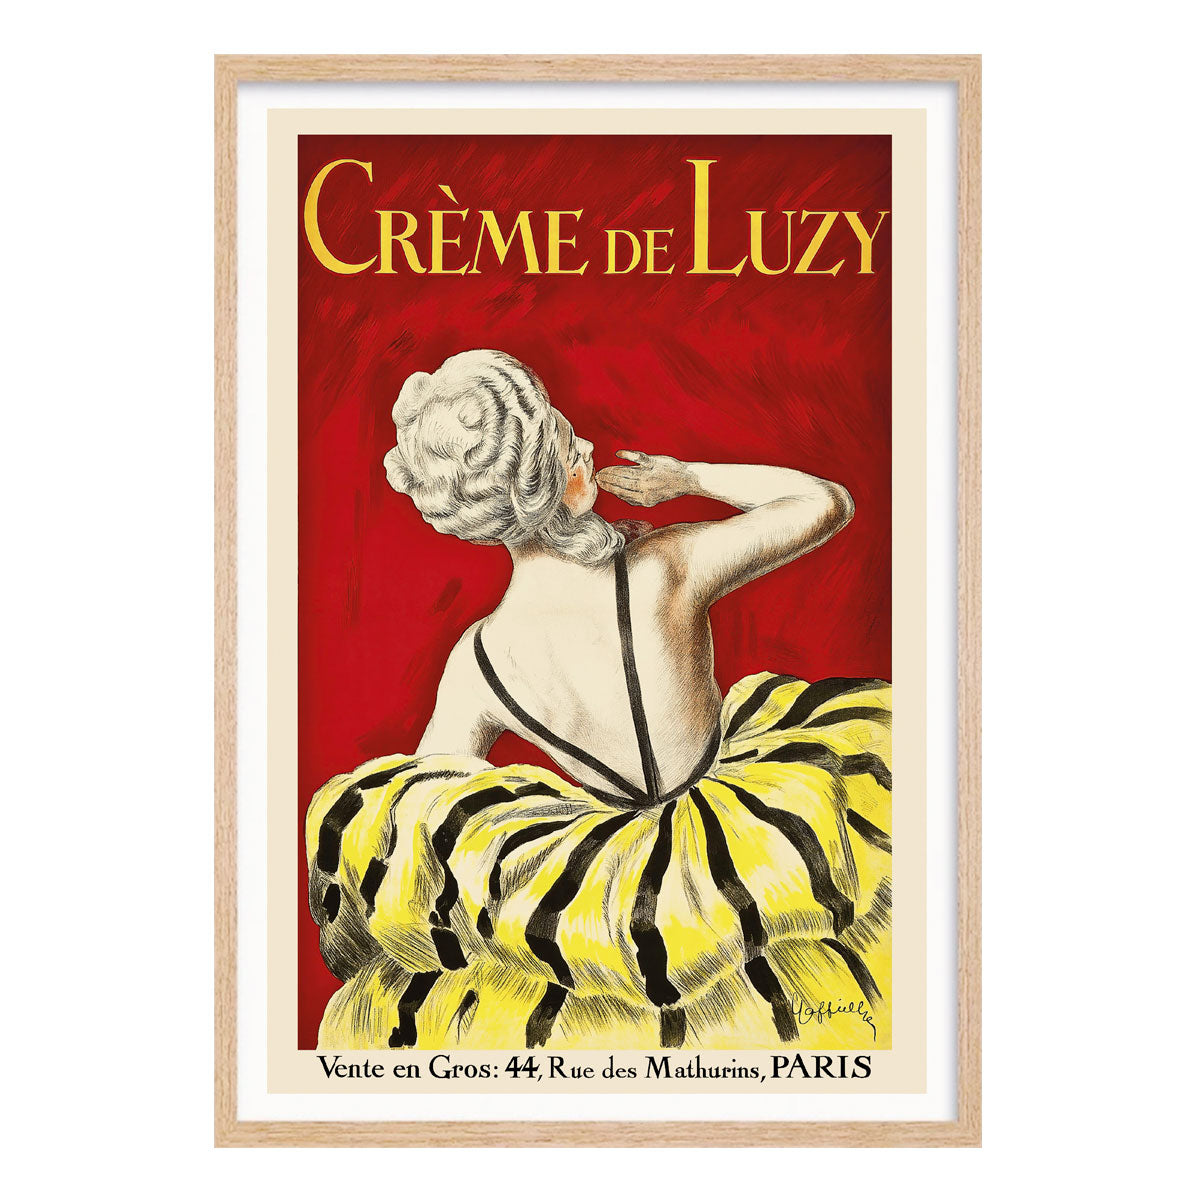 Creme de Luzy Paris vintage retro poster print in oak frame from Places We Luv